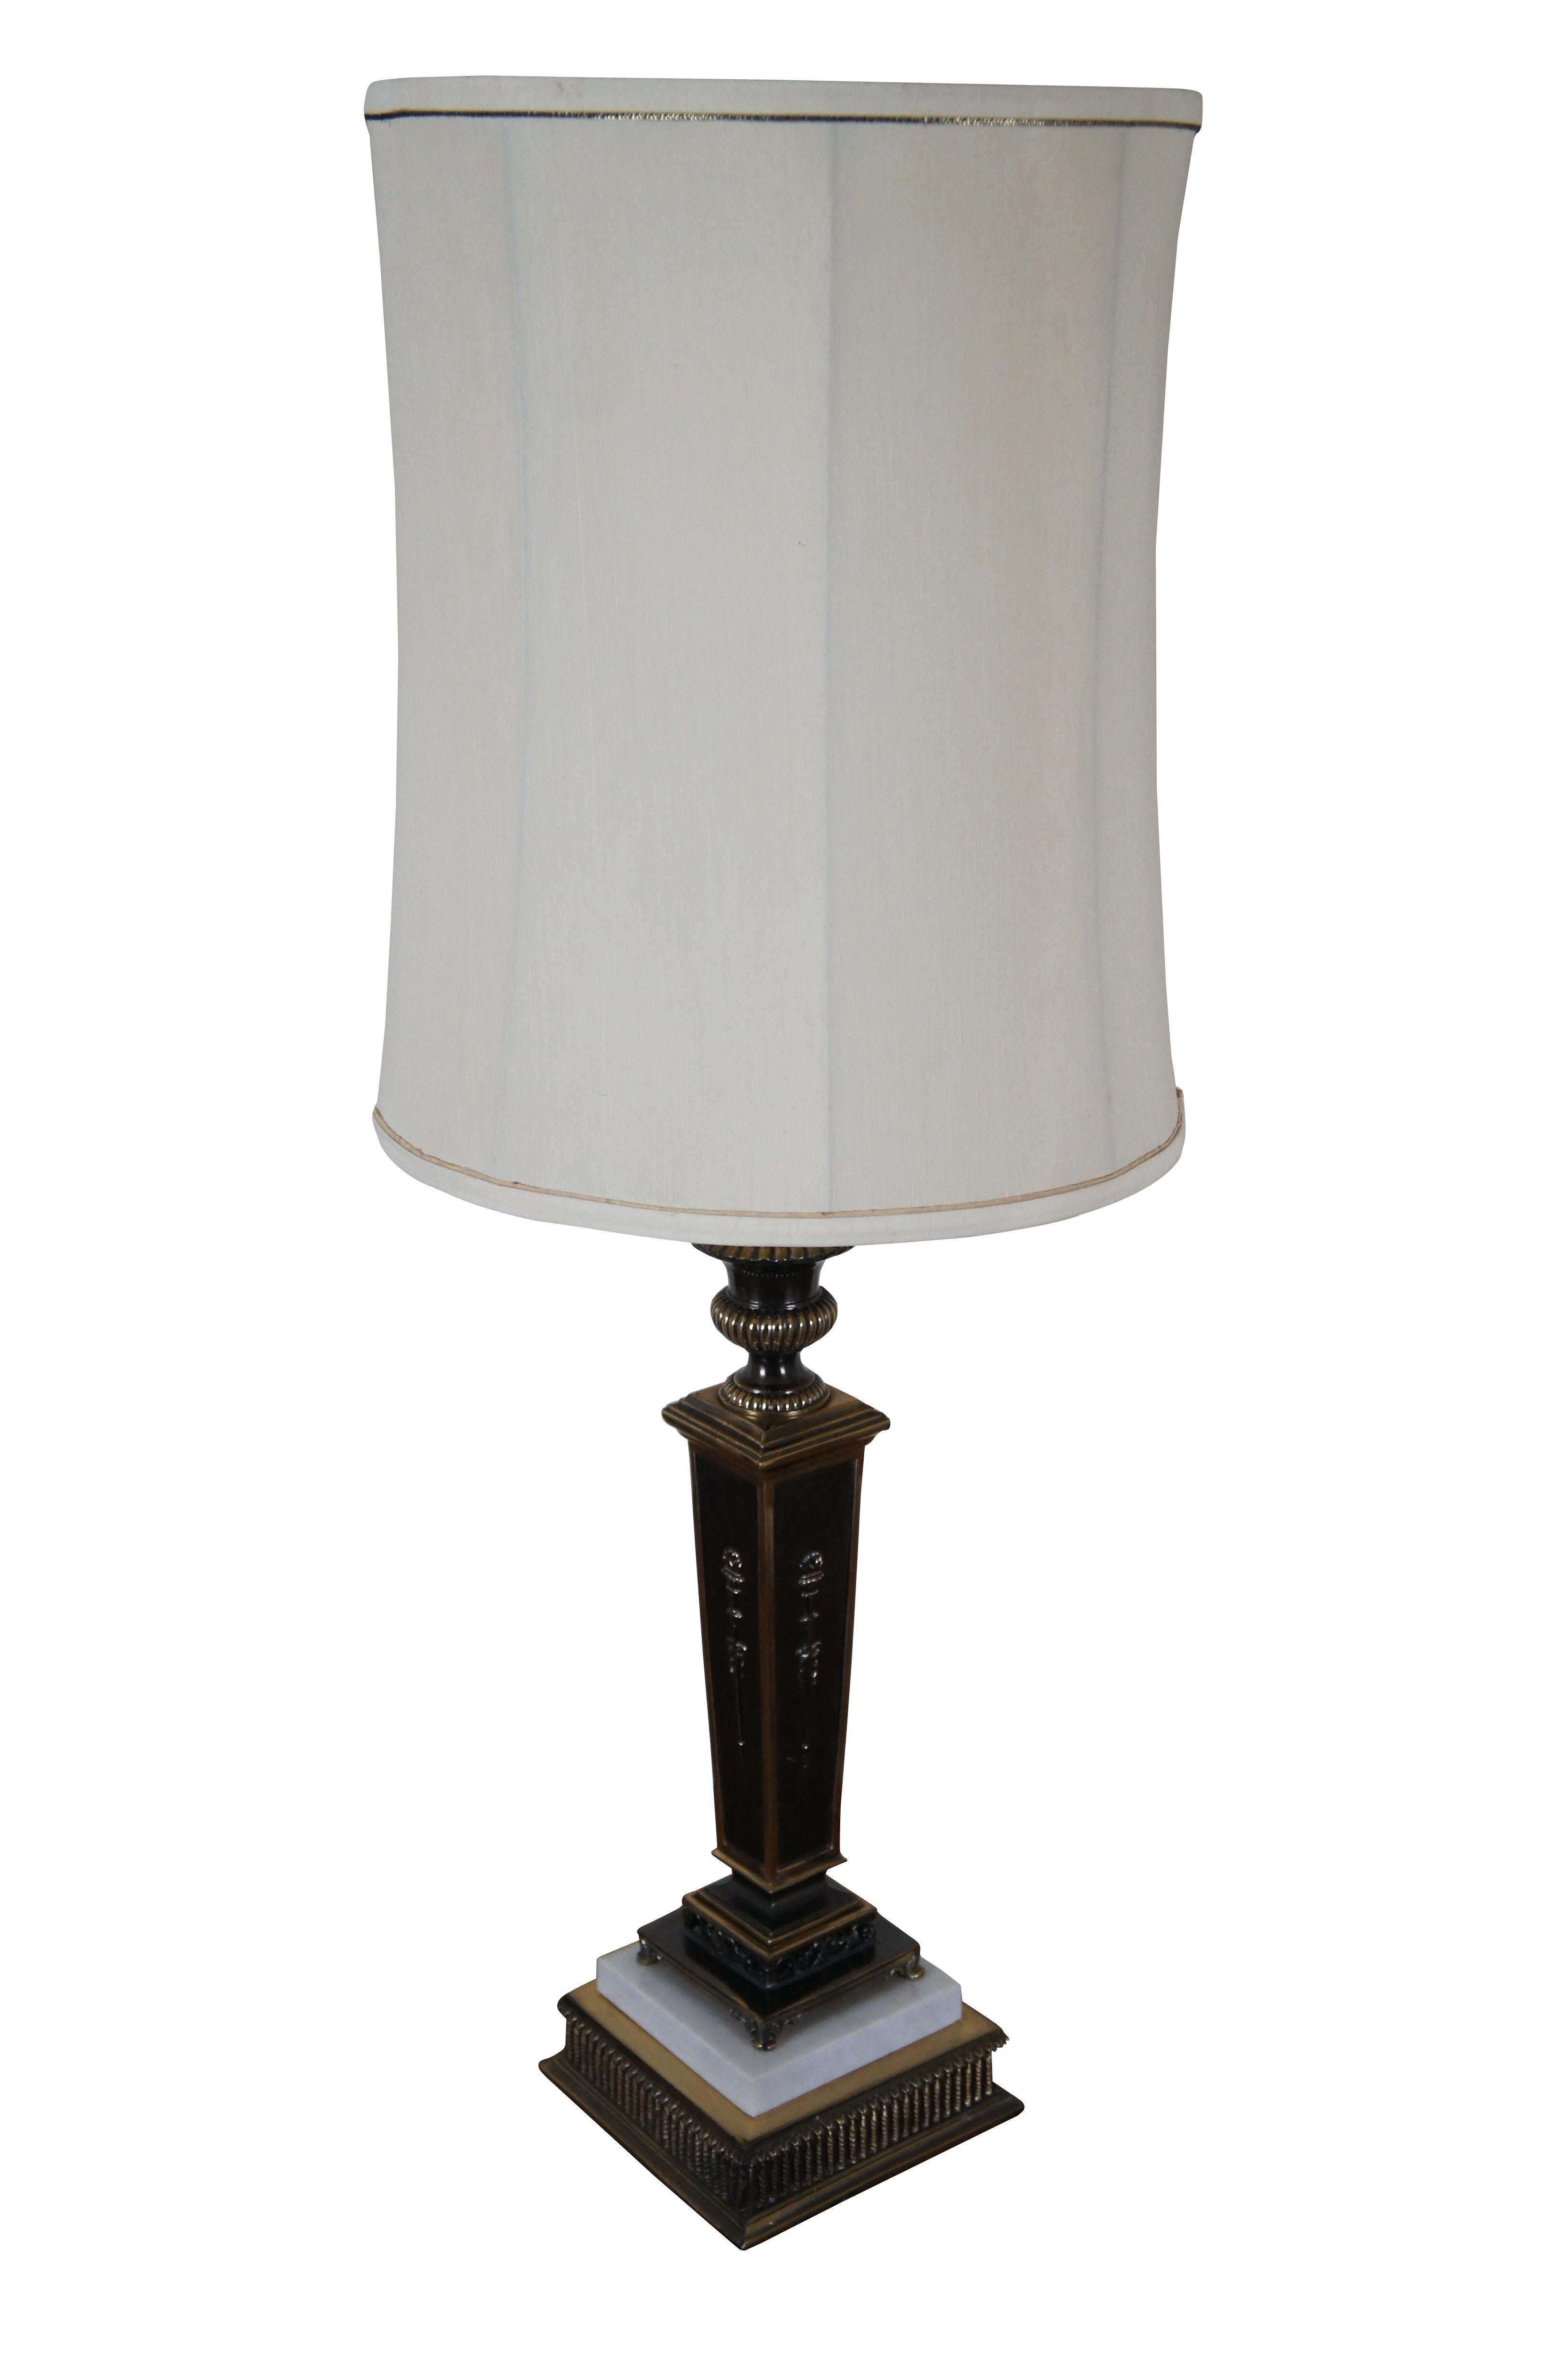 Vintage Empire-Stil Fackel / quadratische Säule / Kerzenhalter geformt Tischlampe, aus Messing mit dunklen Akzenten und weißem Marmor auf der Basis gefertigt. Mit kappenförmigem Endstück und zylindrischem, weißem Stoffschirm mit schmaler